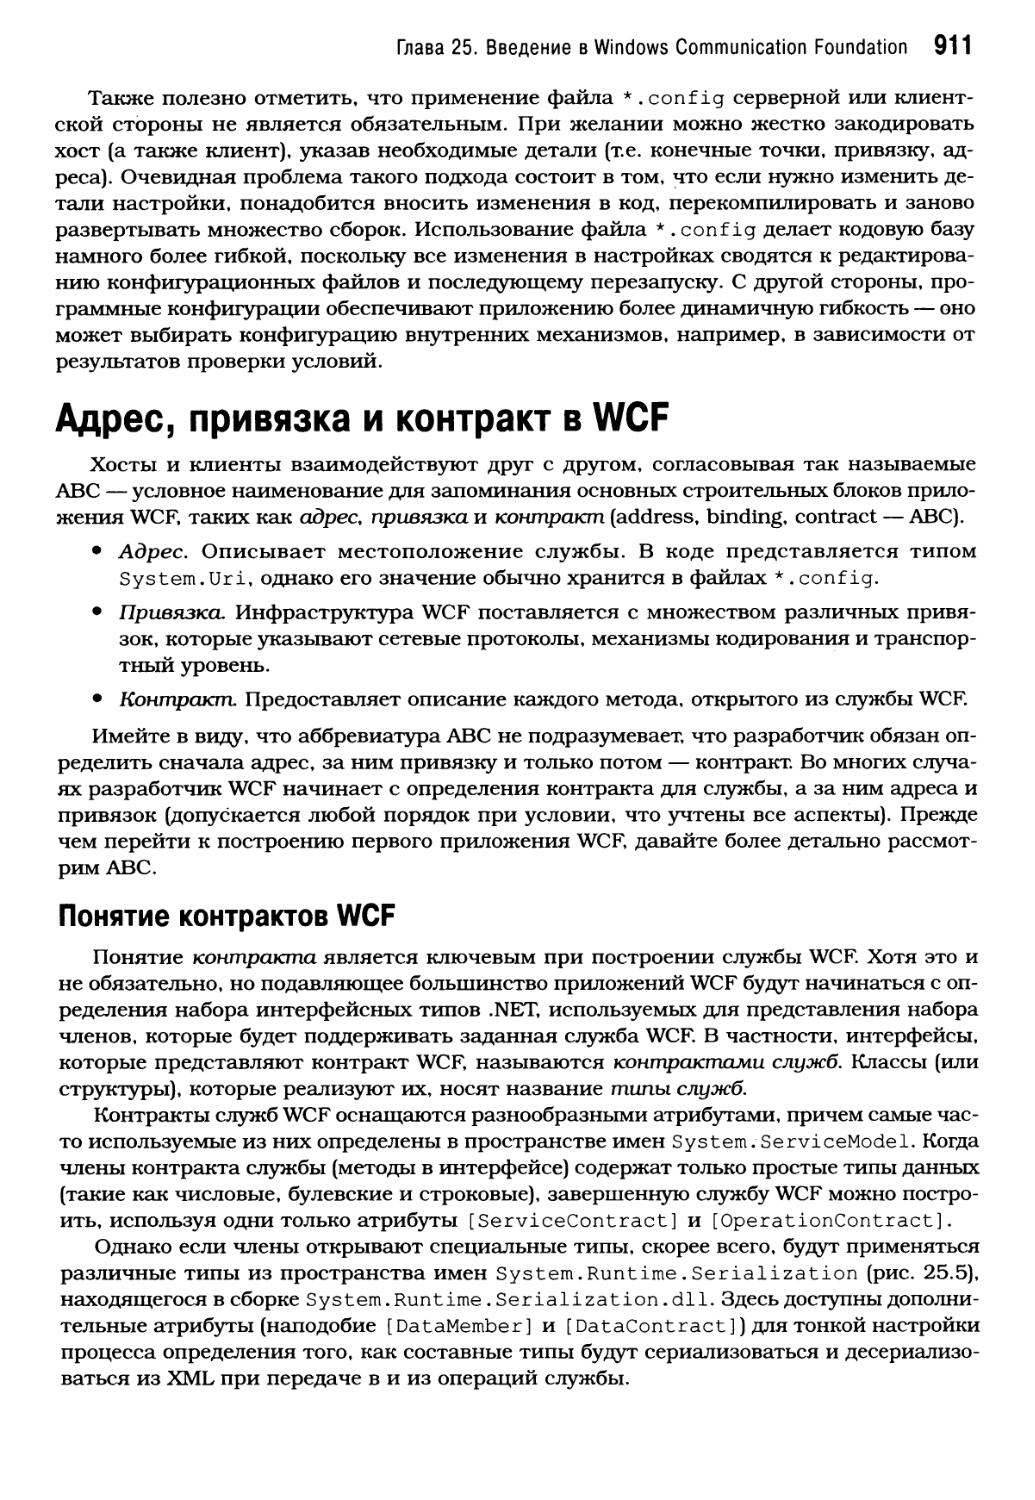 Адрес, привязка и контракт в WCF